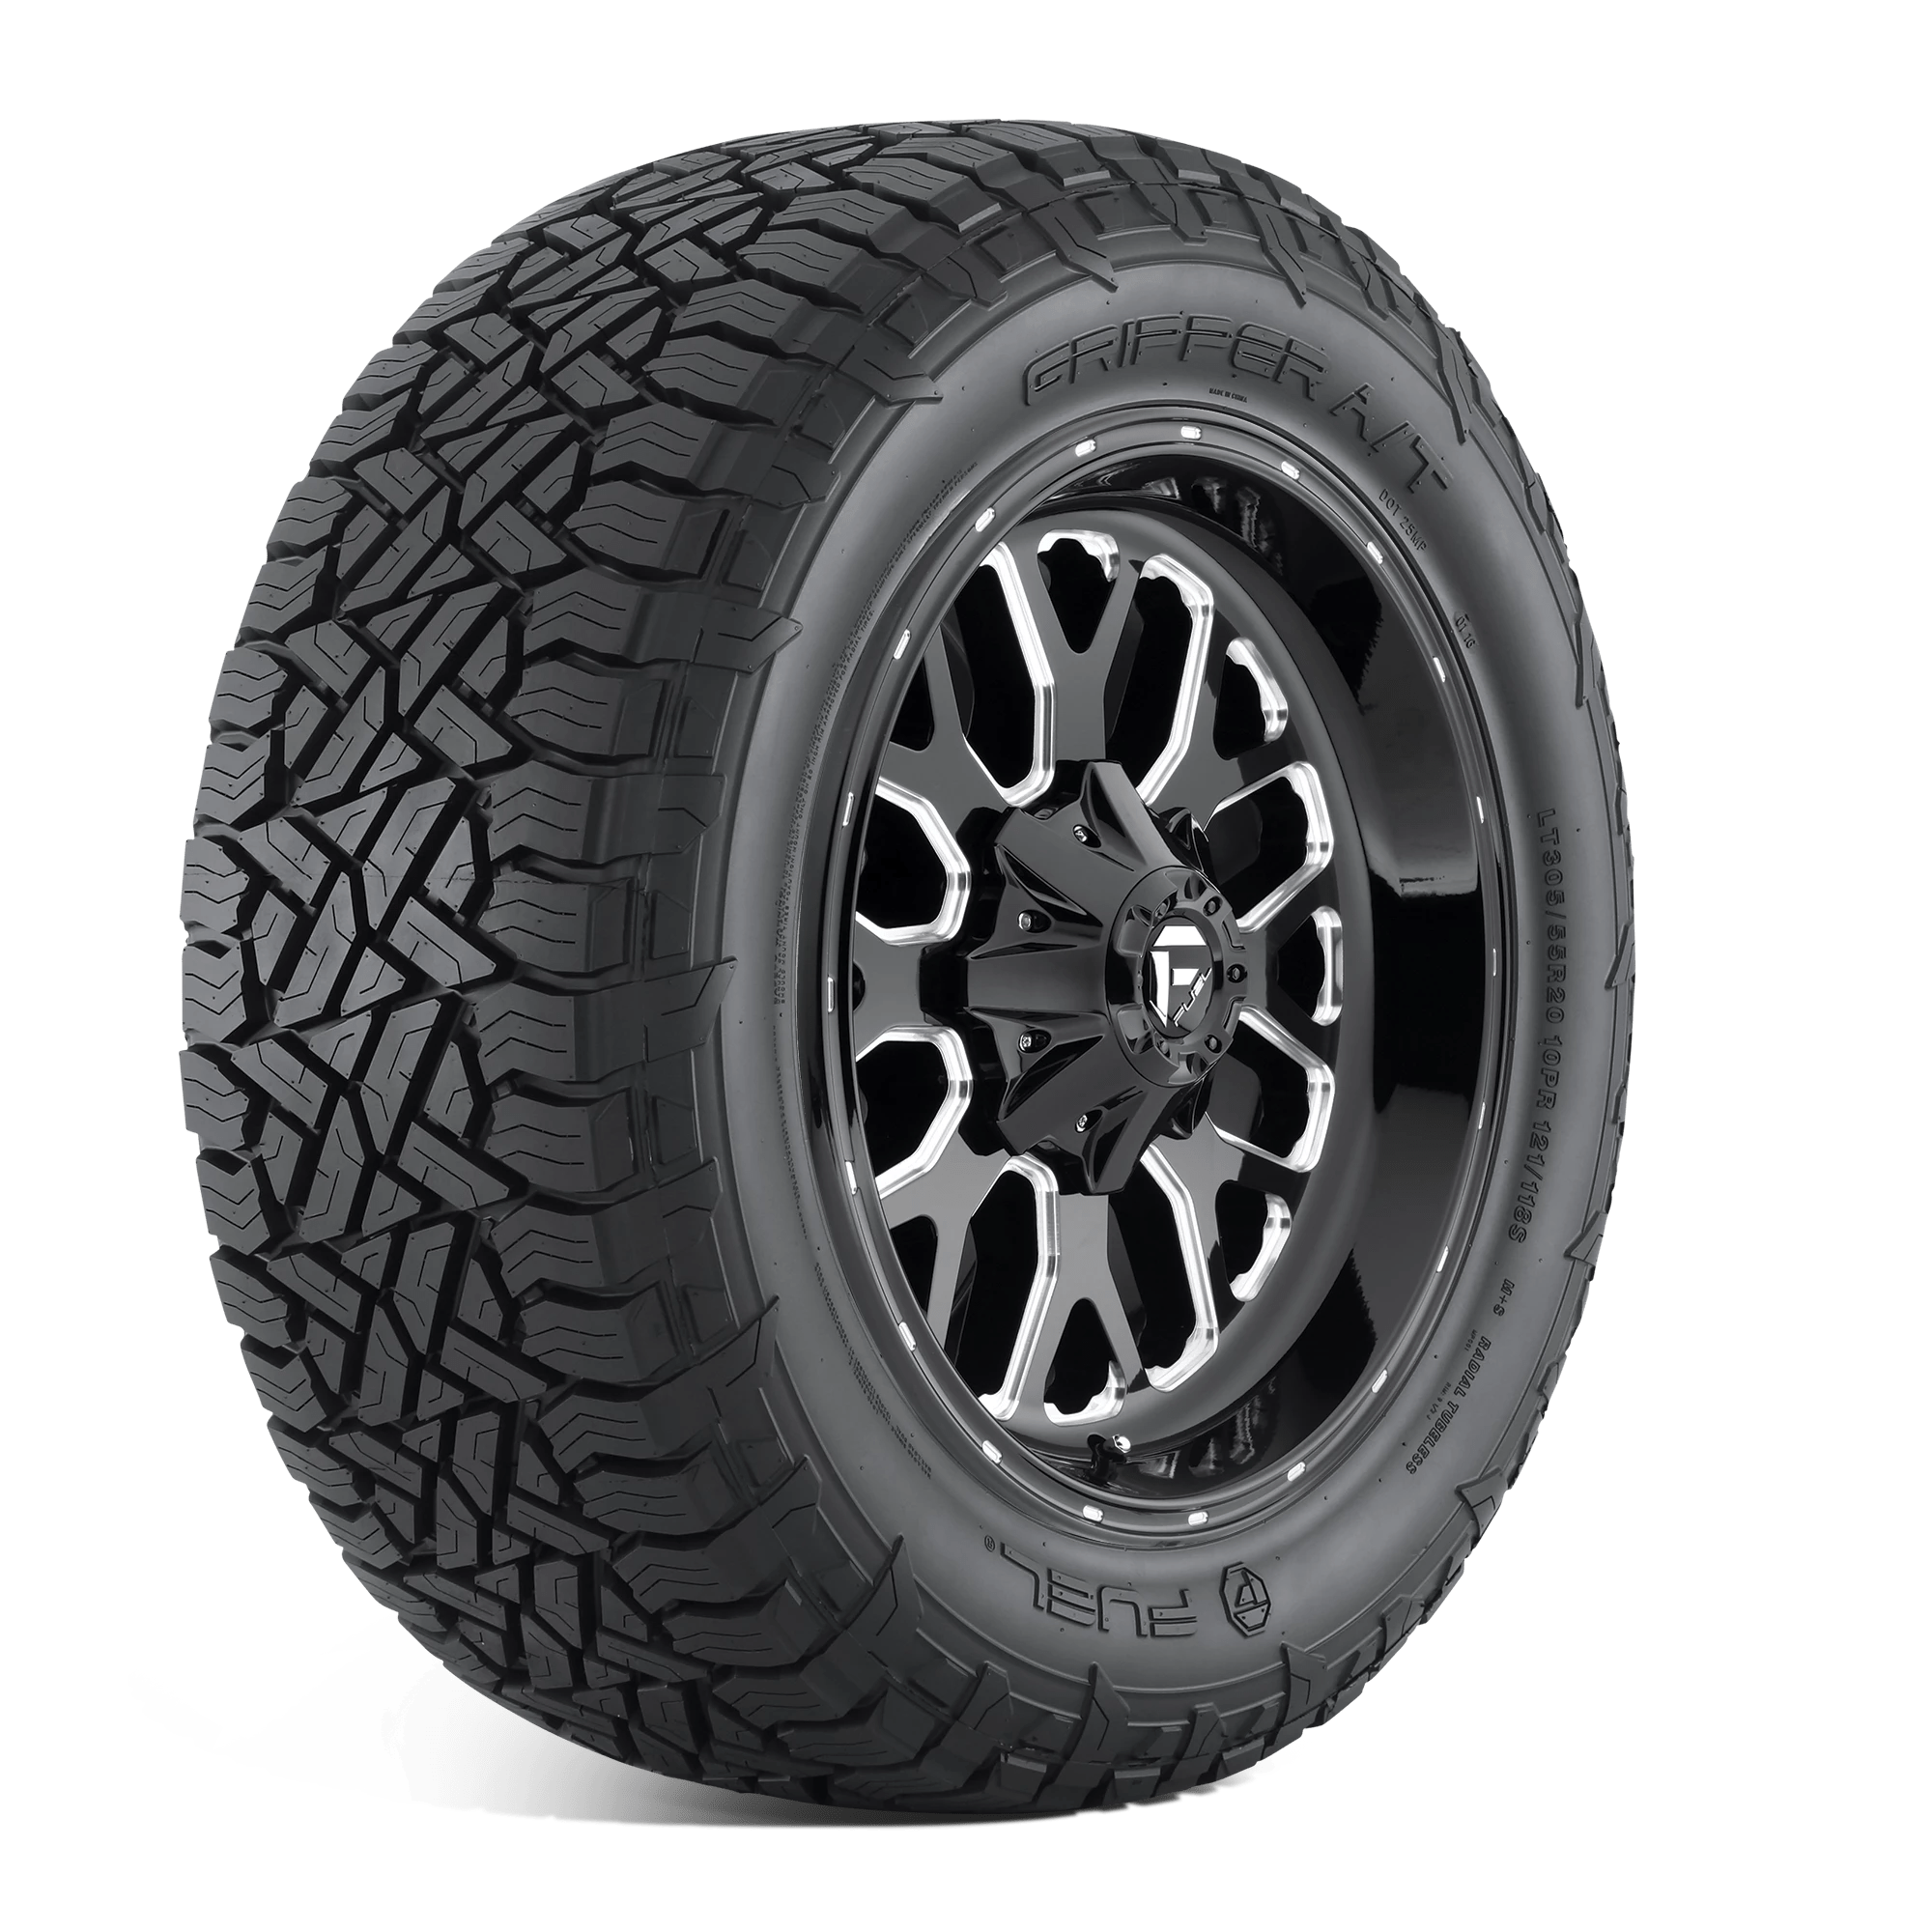 FUEL GRIPPER AT 295/70R18 (34.3X11.8R 18) Tires